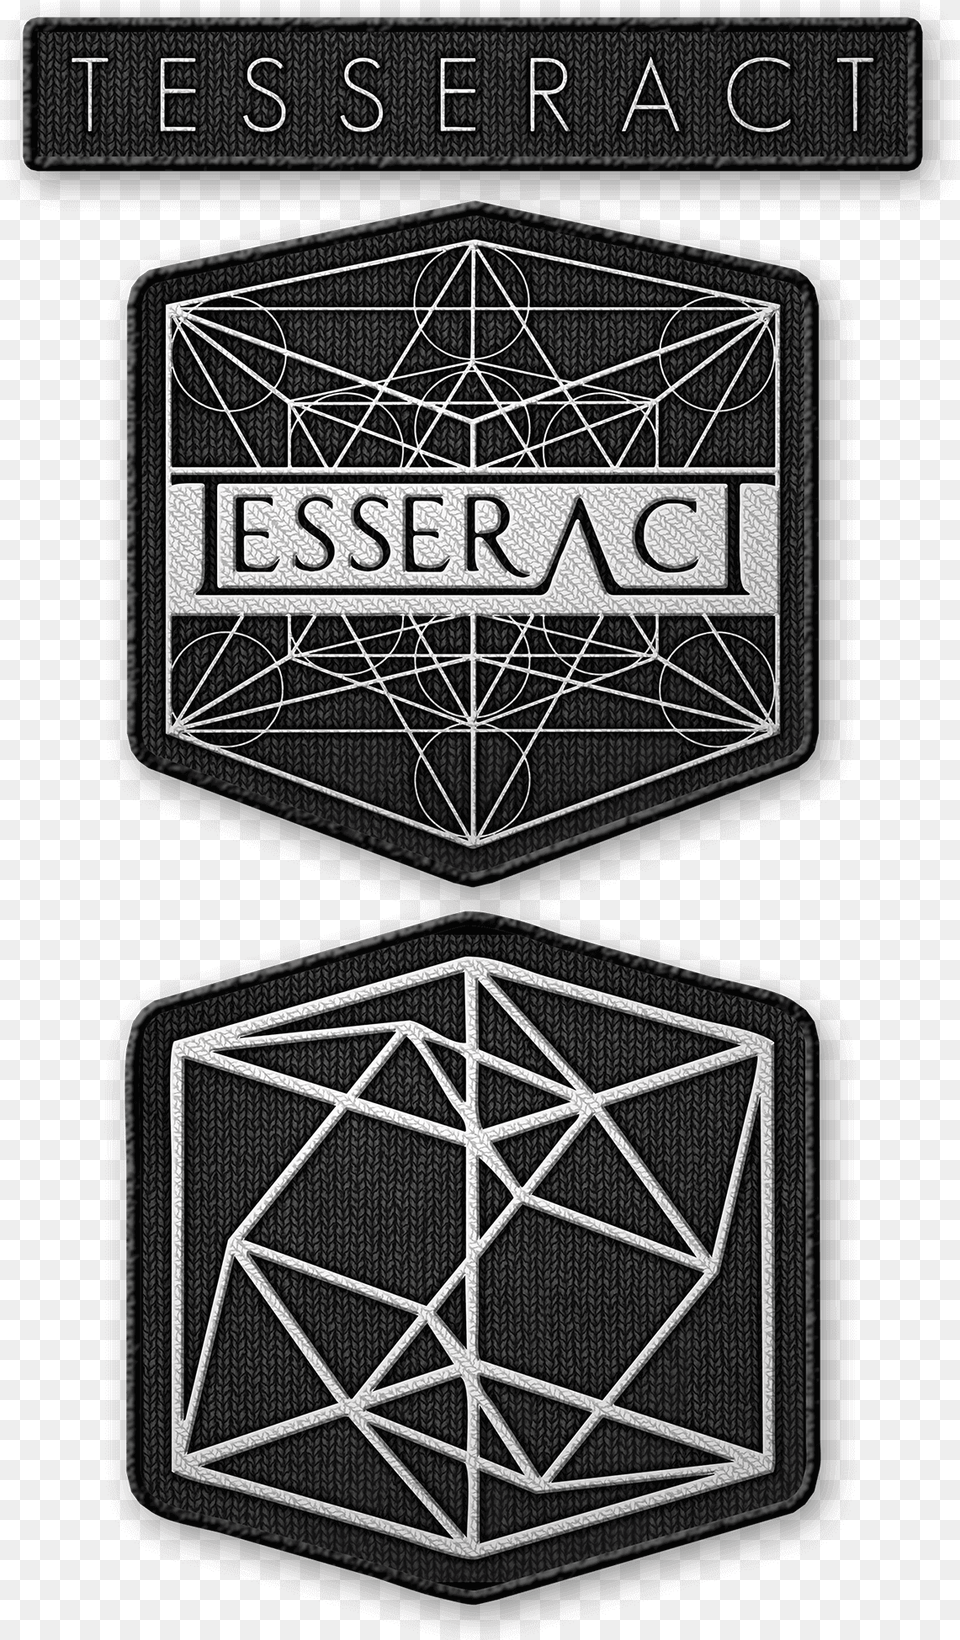 Bravado Logos Tesseract 3er Aufnher Set Tesseract Phone, Badge, Logo, Symbol, Emblem Free Transparent Png